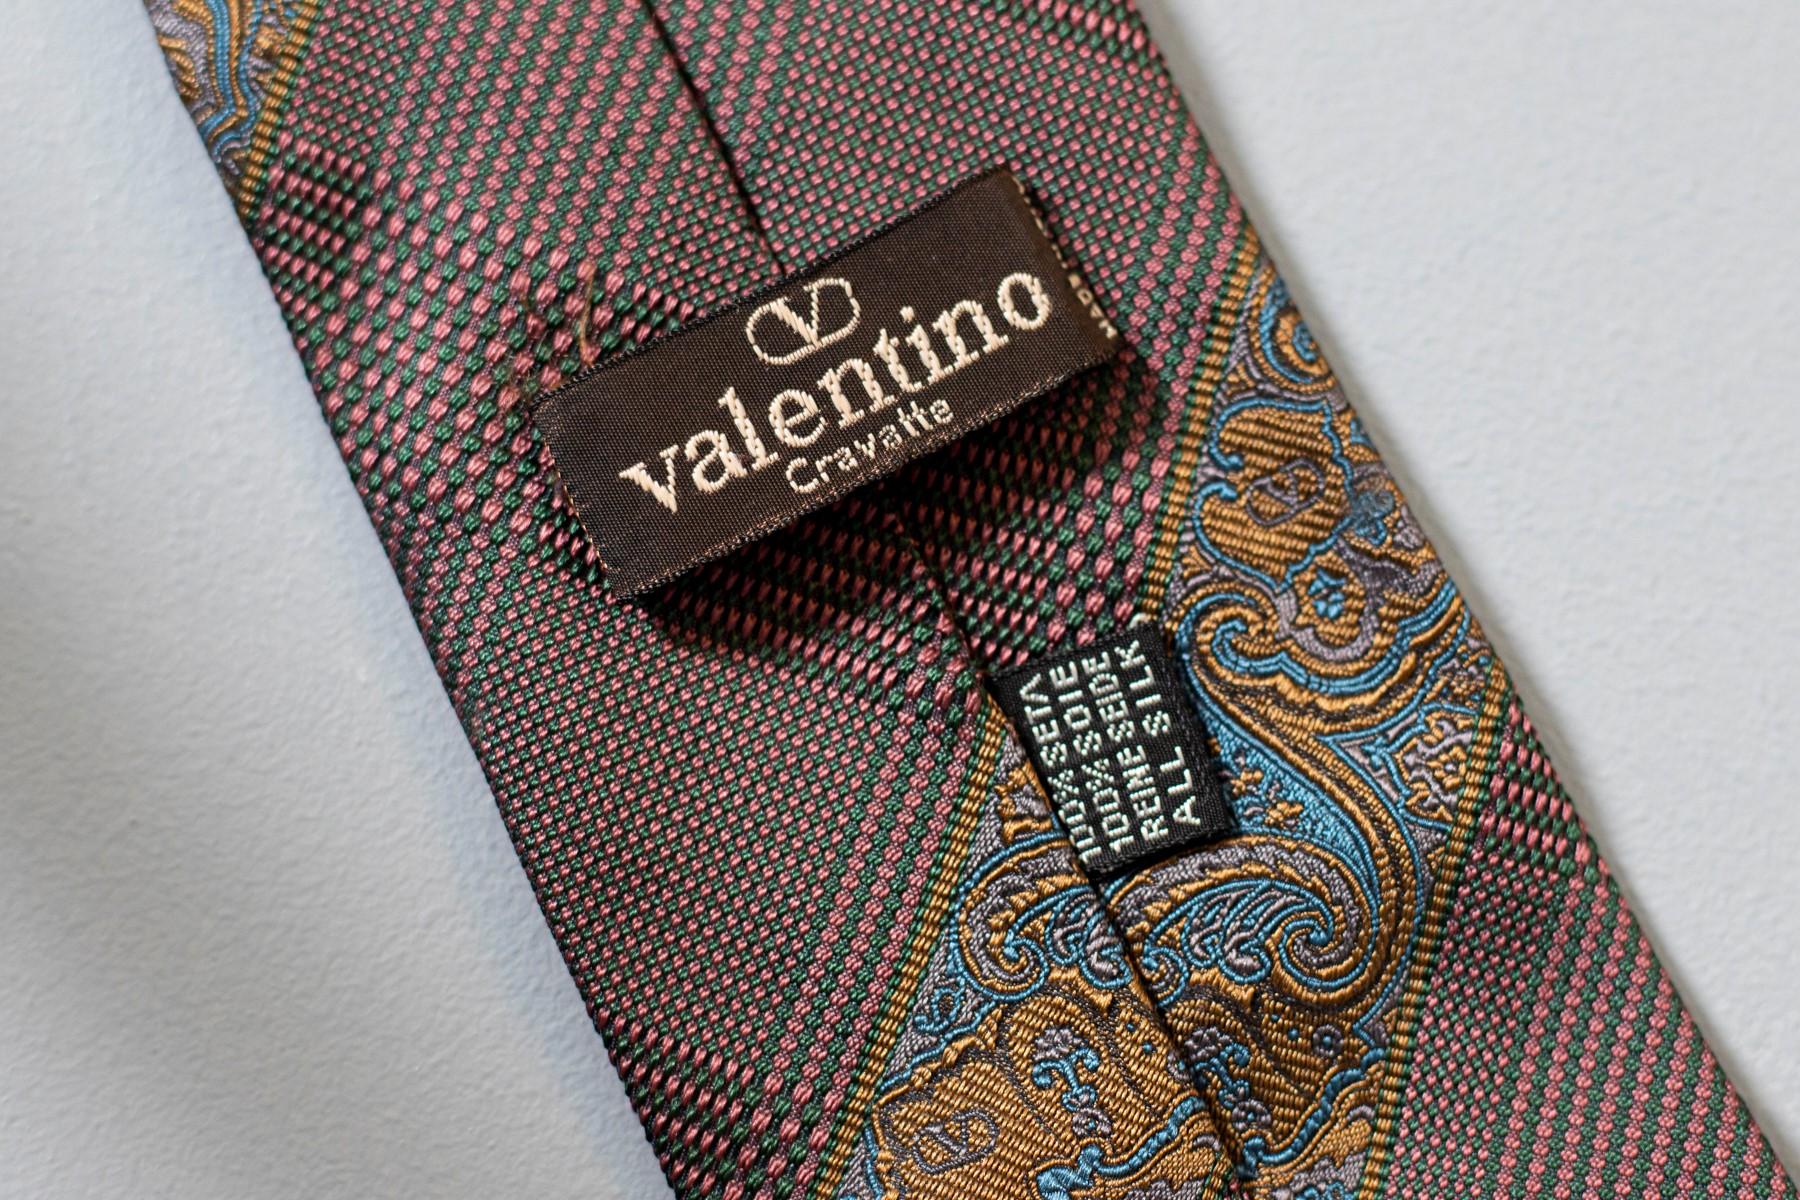 Fabriquée en Italie et conçue par le grand Valentino, cette cravate vintage est classique et élégante. Décorée de motifs dorés et bleus sur un fond brunâtre chaud, cette cravate est idéale pour une soirée formelle et elle se marie parfaitement avec